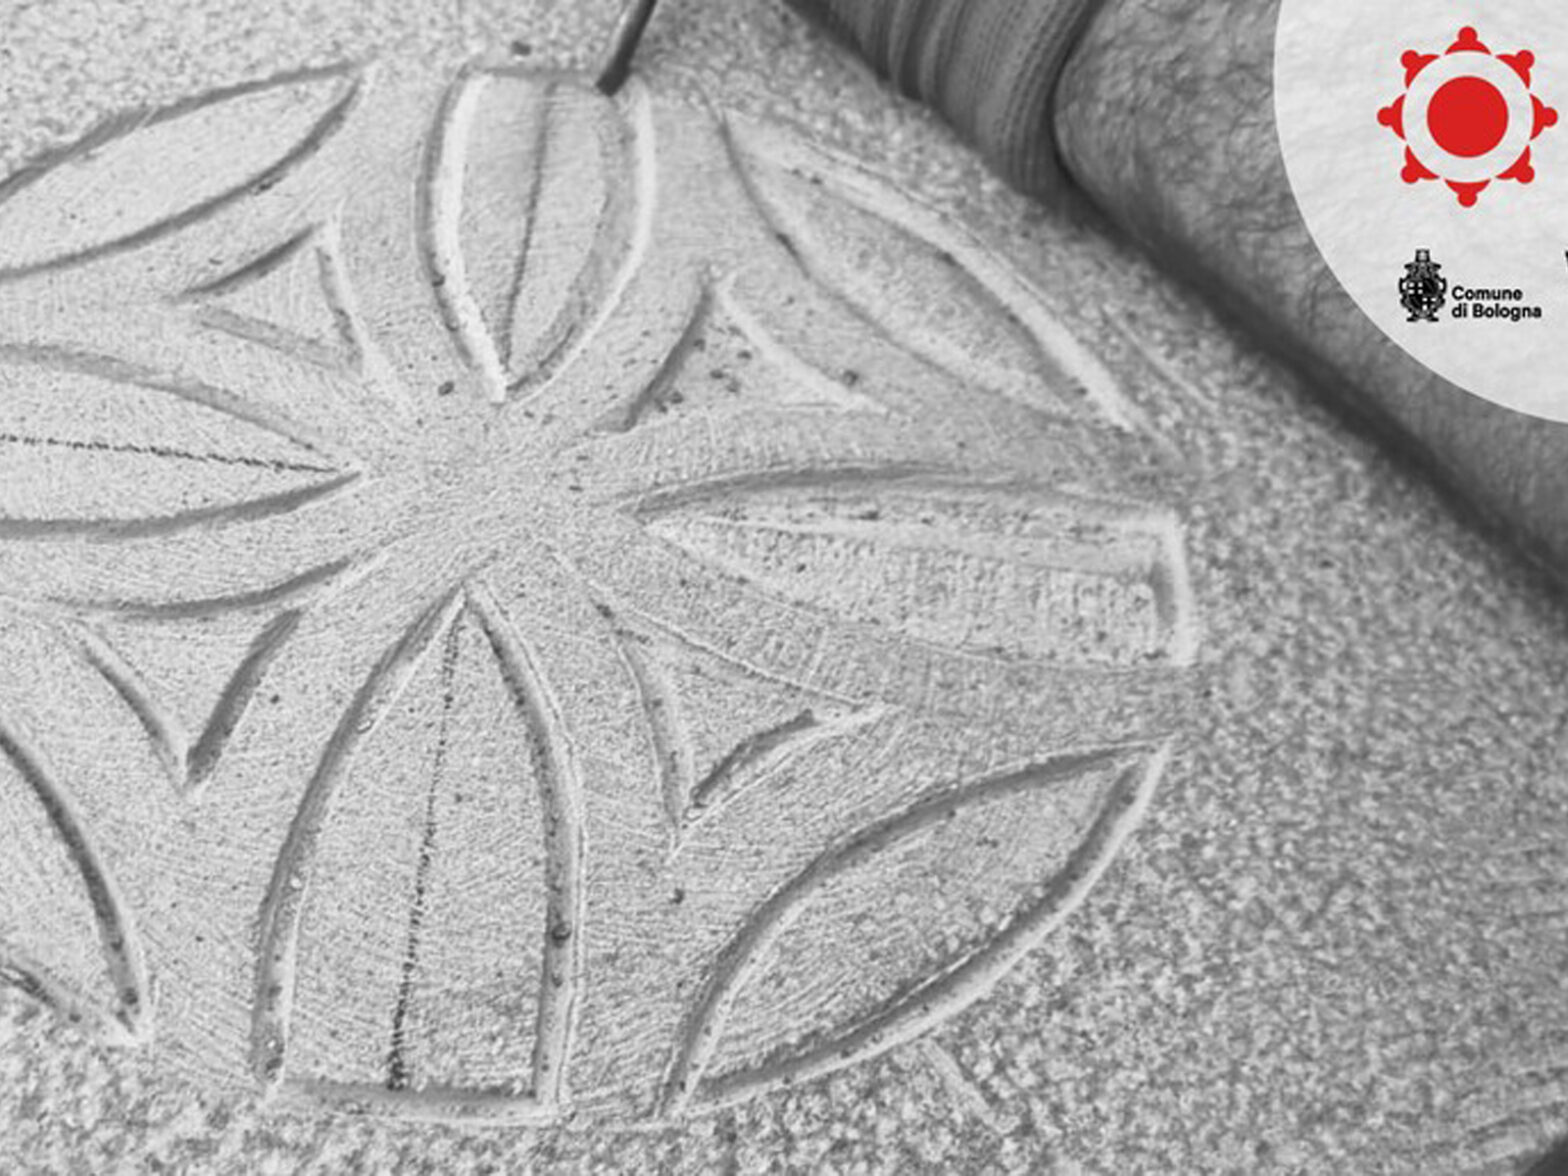 16-04-2024 | Riconoscimento De.Co. all’ “Antica arte dello scalpellino e della scultura in arenaria”, tradizione ancestrale tipica della Valle del Reno